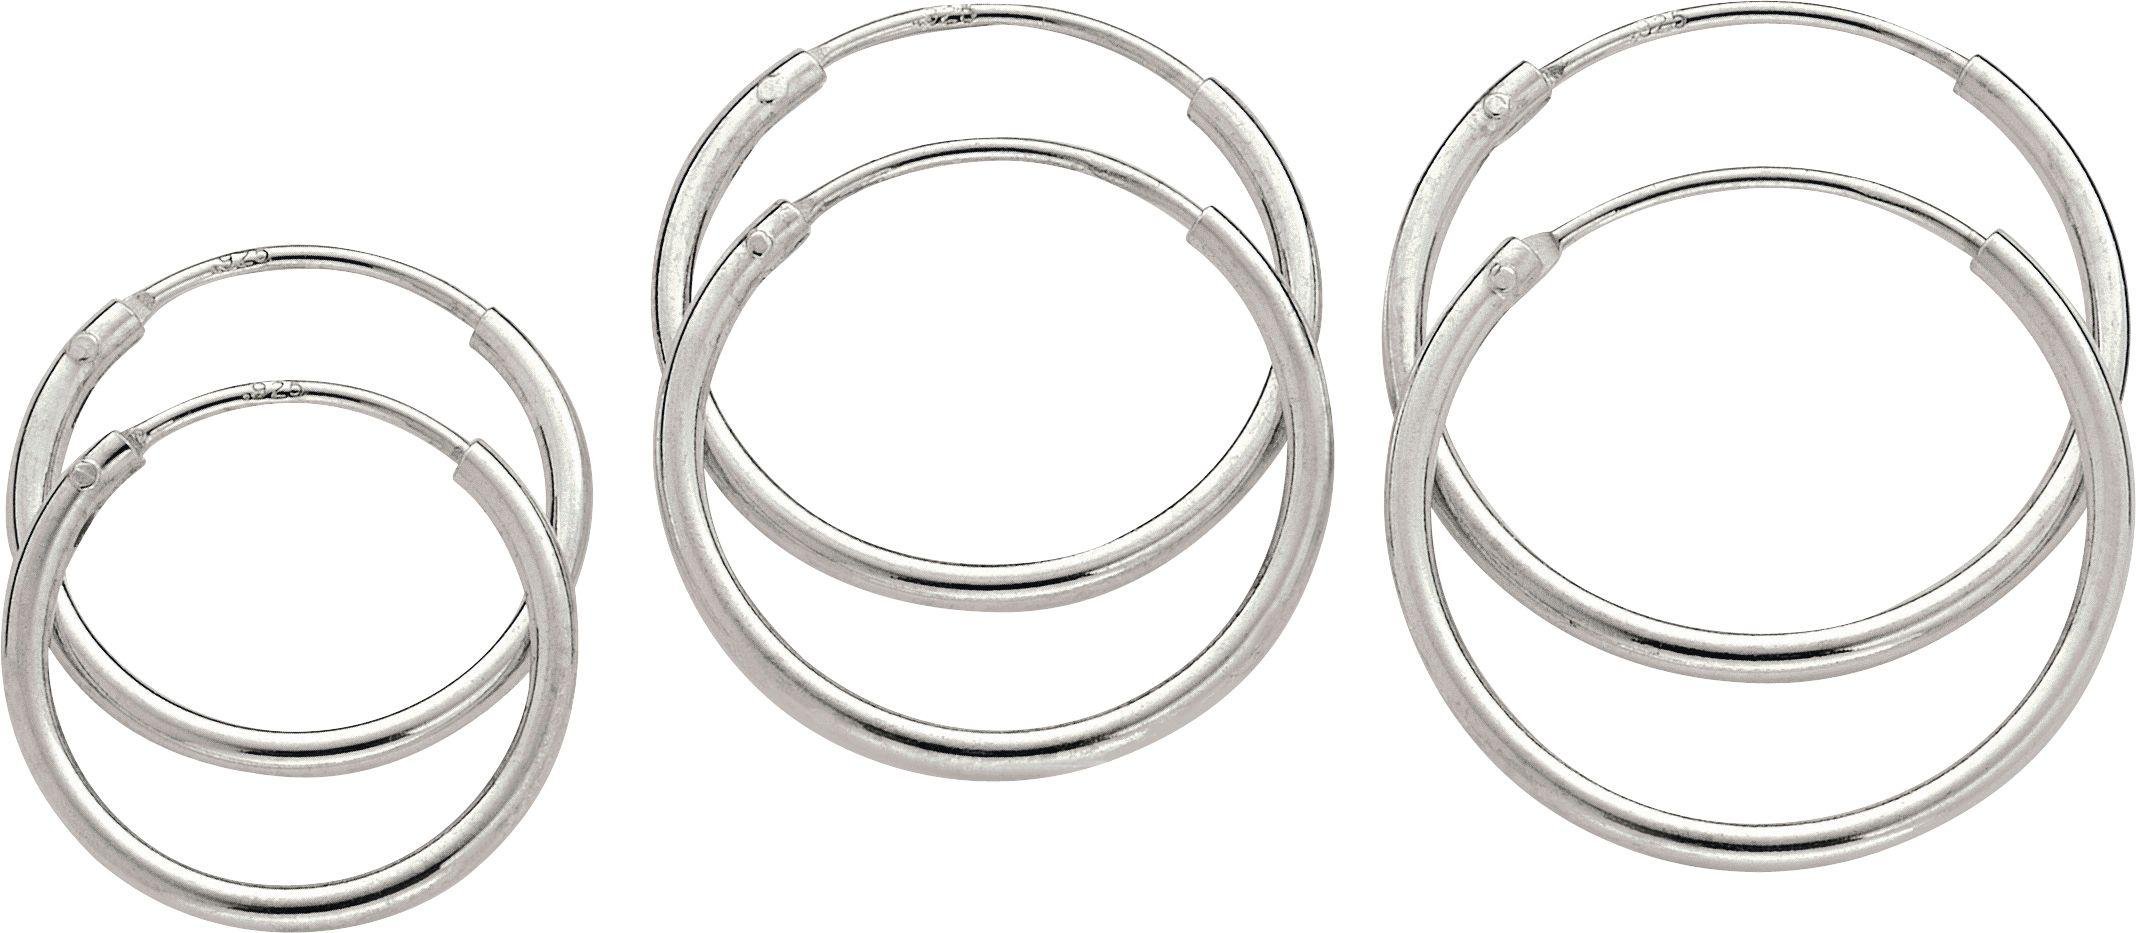 Revere Sterling Silver Set of 3 Hoop Earrings